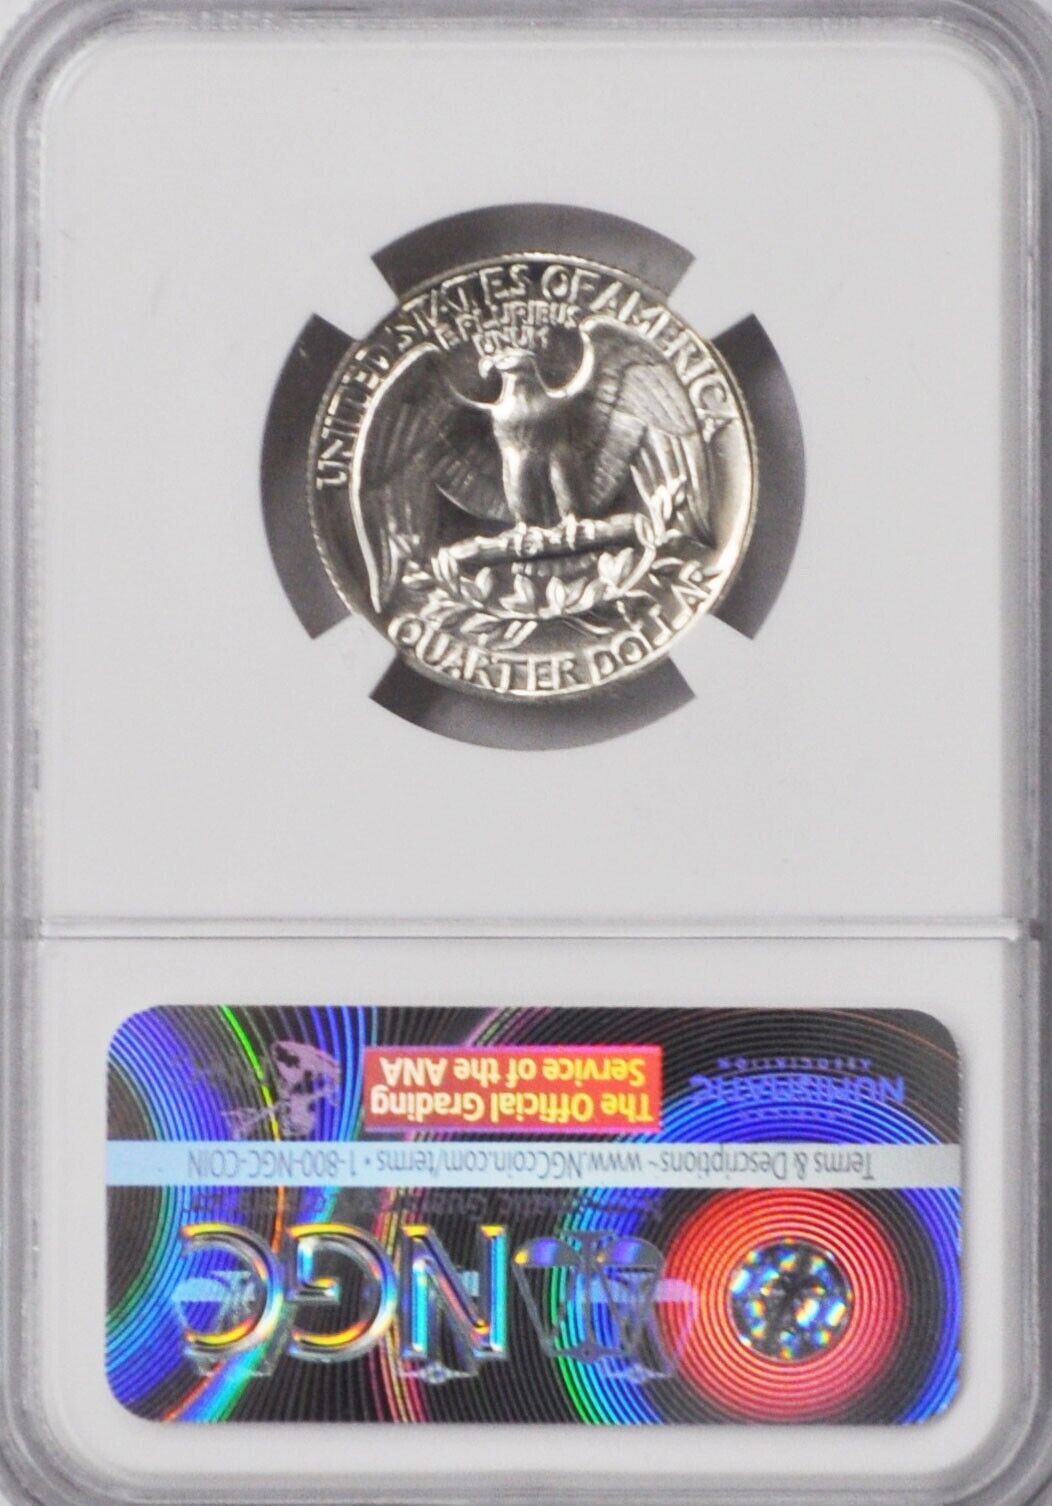 1964 25c Washington Proof Silver Quarter Dollar NGC PF67